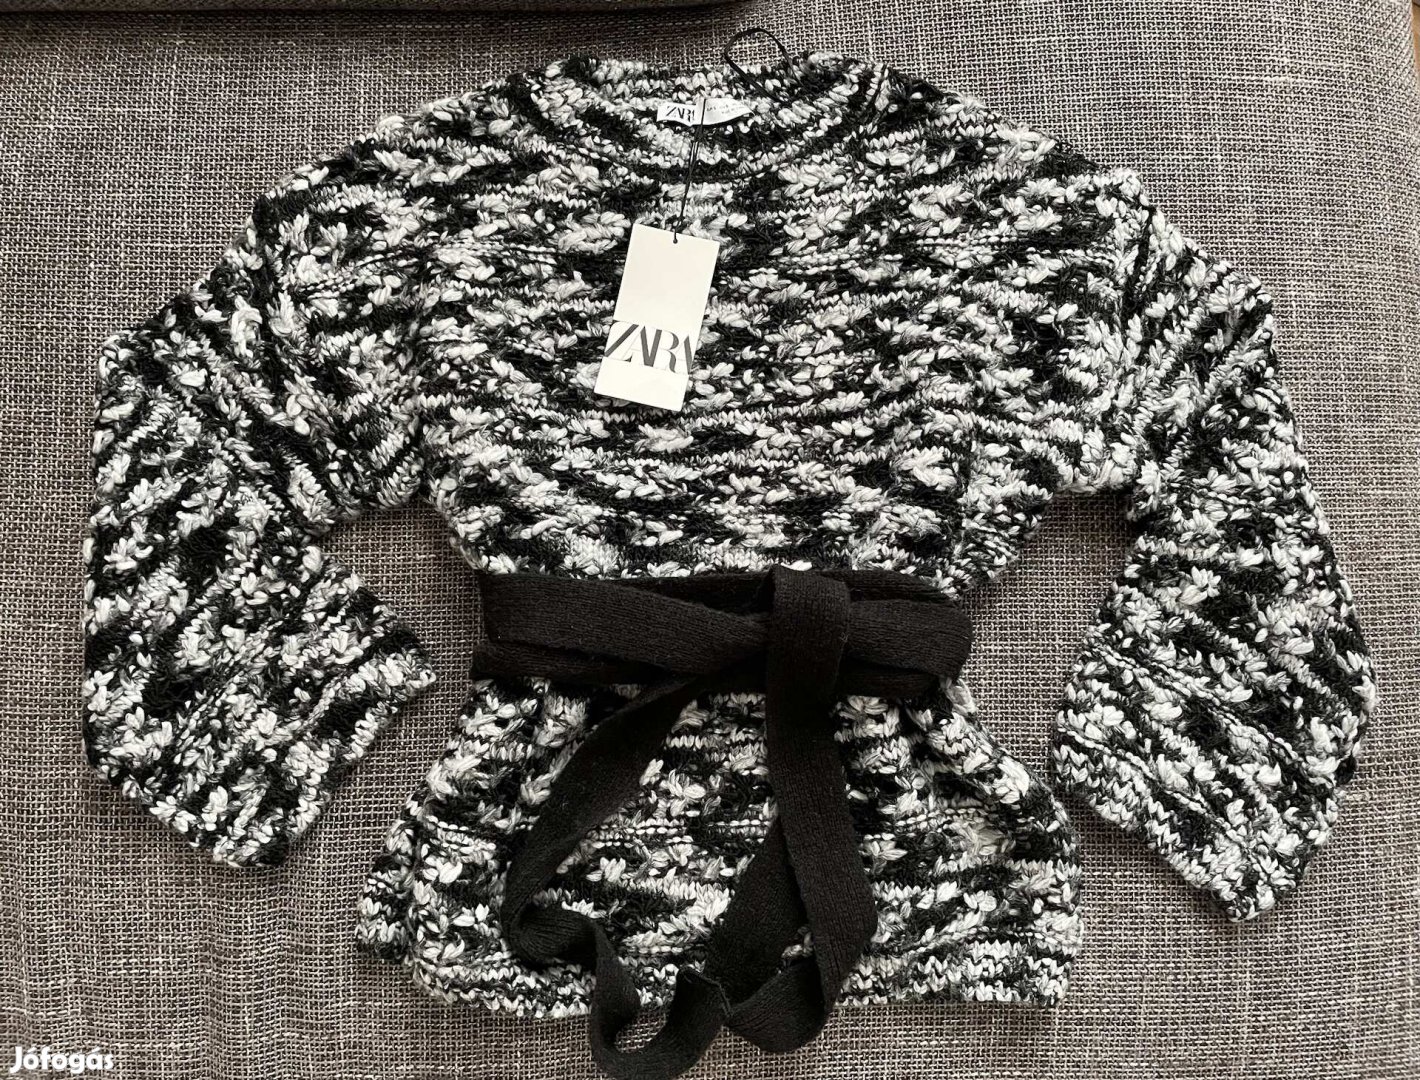 Zara öves pulóver